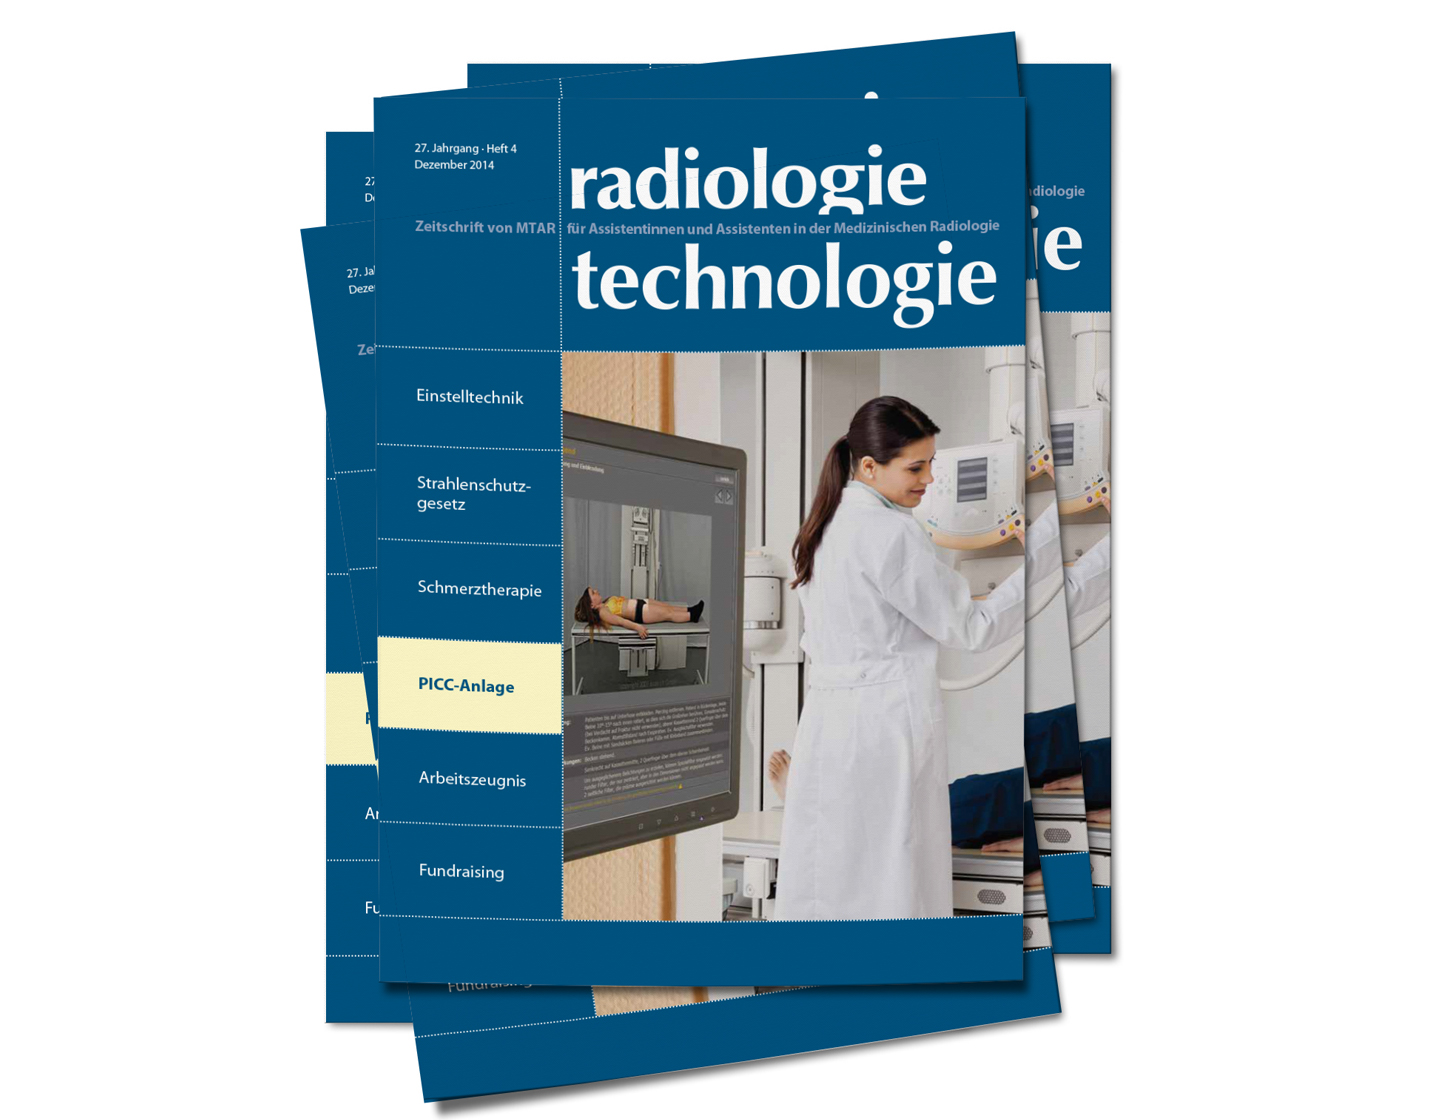 Radiologie und Technologie | Das Magazin für alle MTRA. Wir sind informativ, aktuell und immer auf dem neuesten Stand der heutigen Technik. Von MTRA für MTRA.